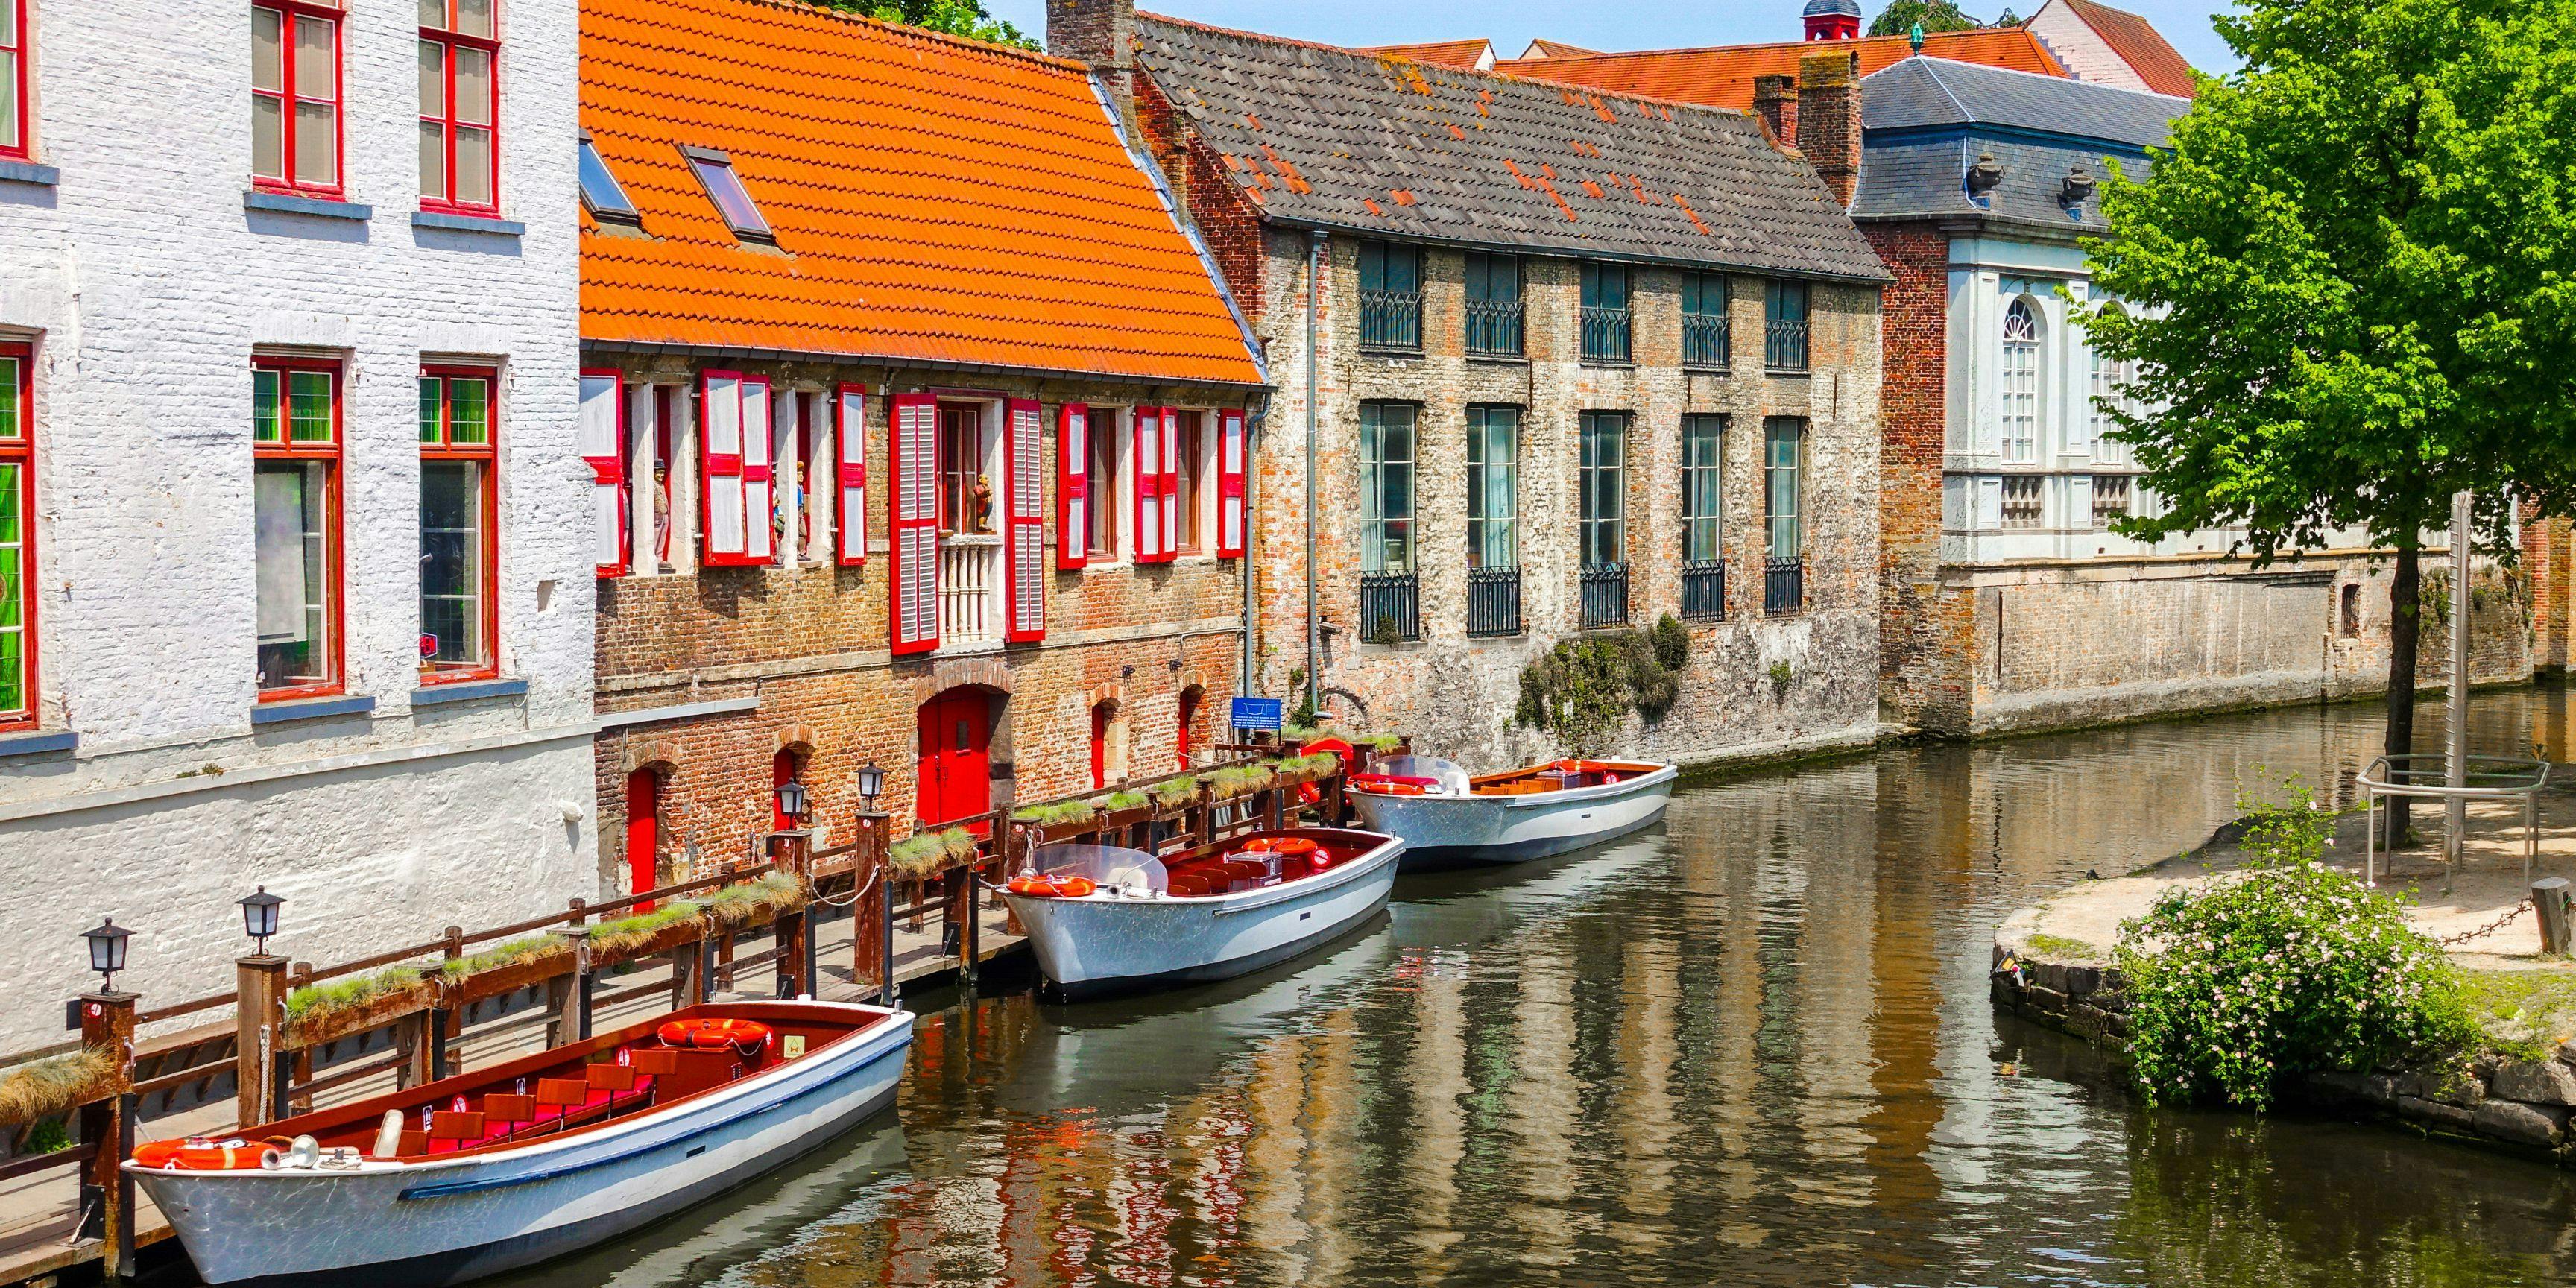 L'un des canaux de Bruges qui relie différents villages aux alentours.